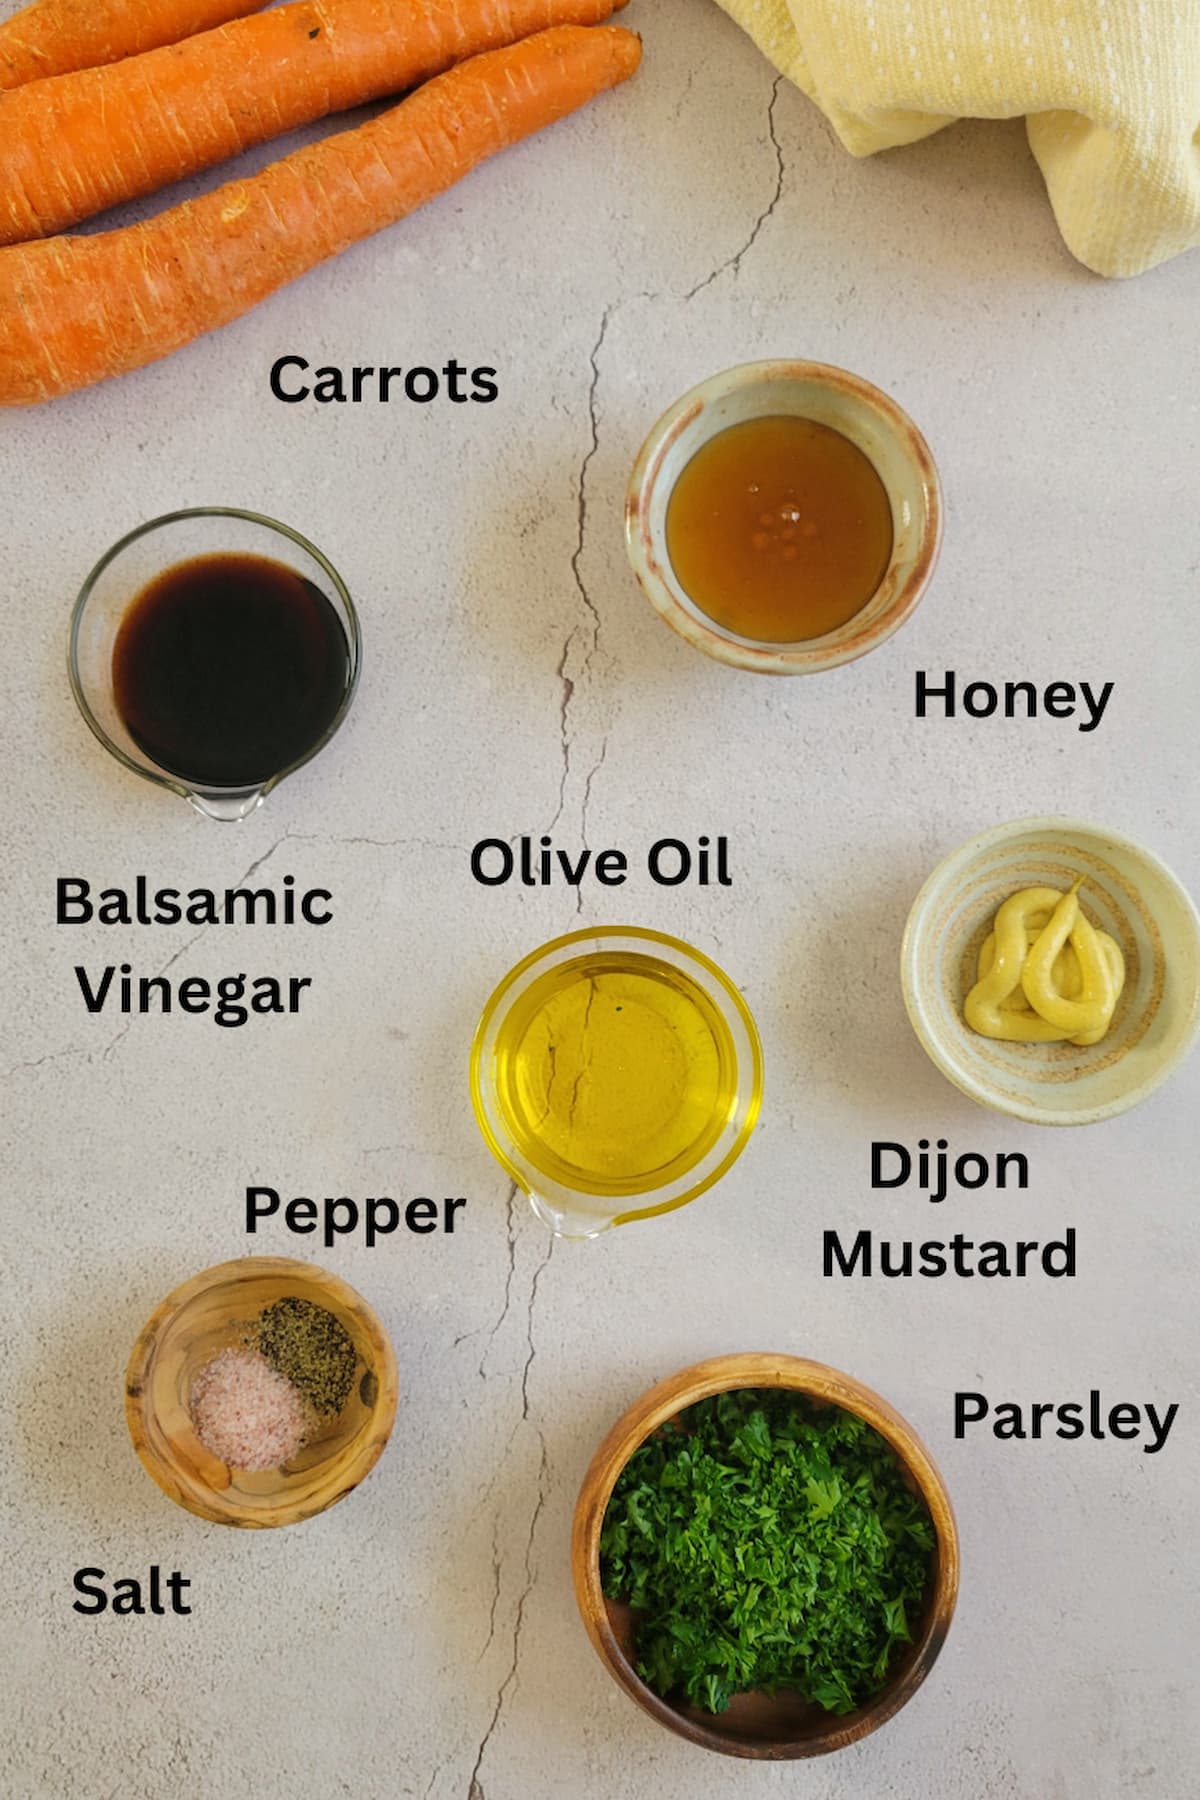 ingredients for glazed carrots recipe - carrots, dijon mustard, olive oil, balsamic vinegar, honey, parsley, salt, pepper